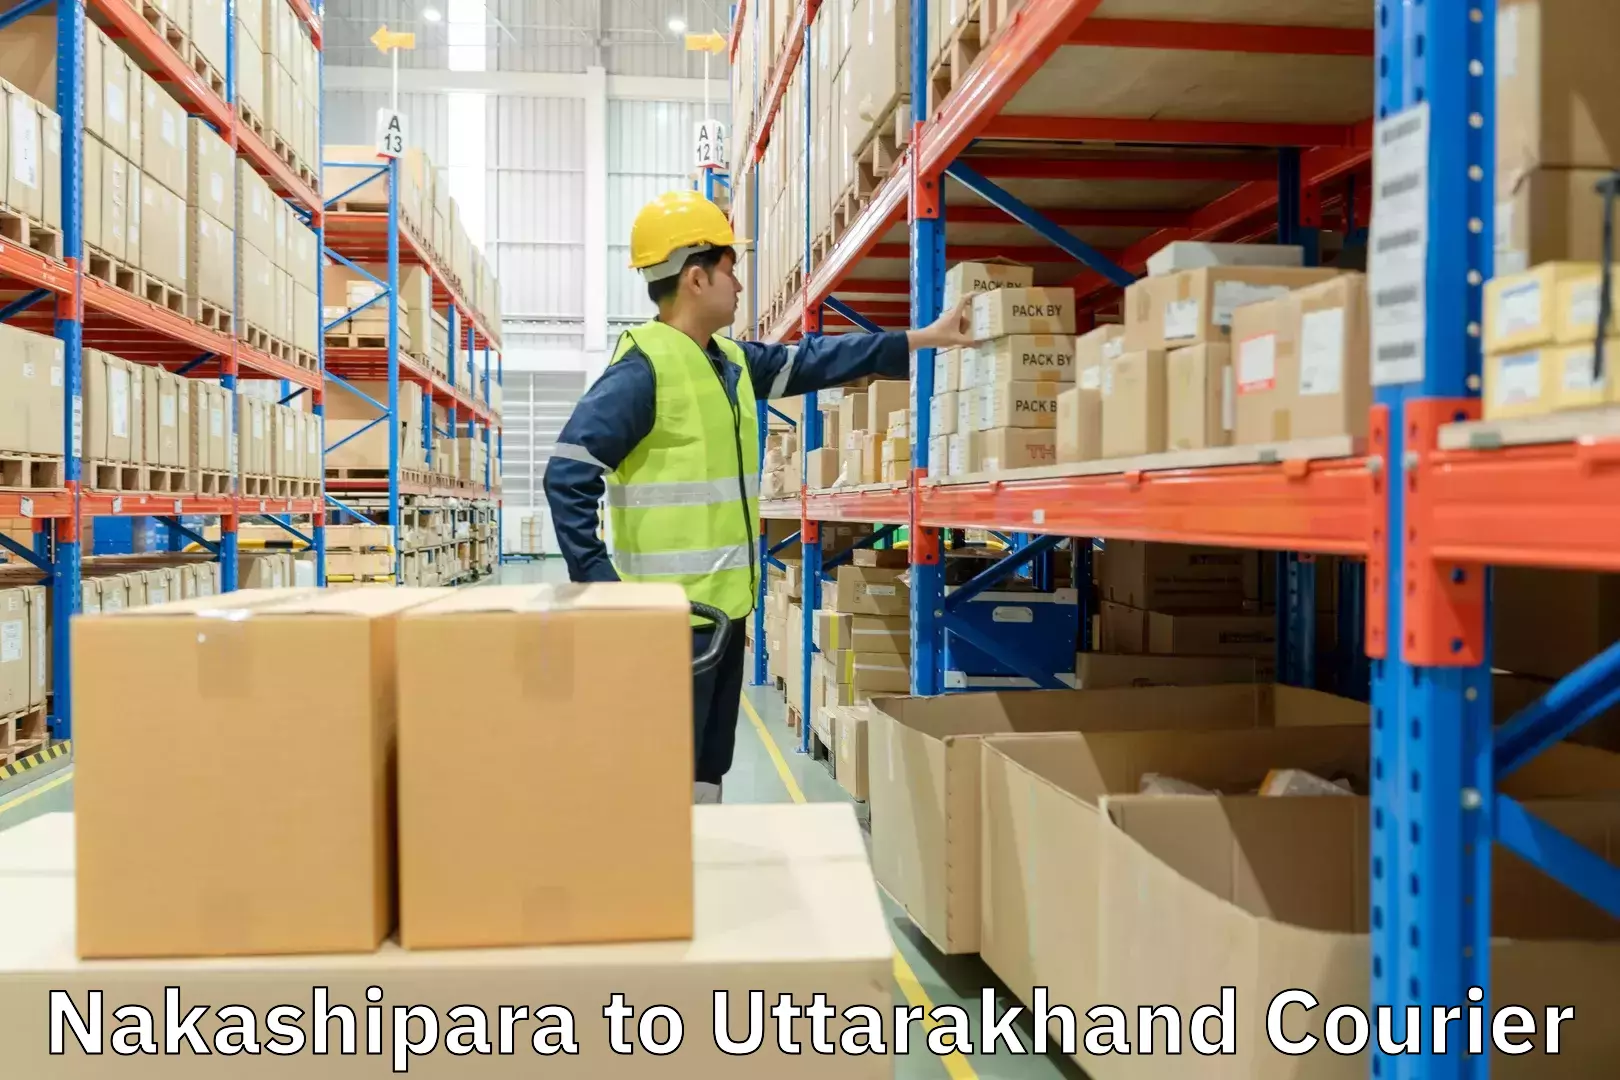 Specialized shipment handling Nakashipara to Uttarakhand